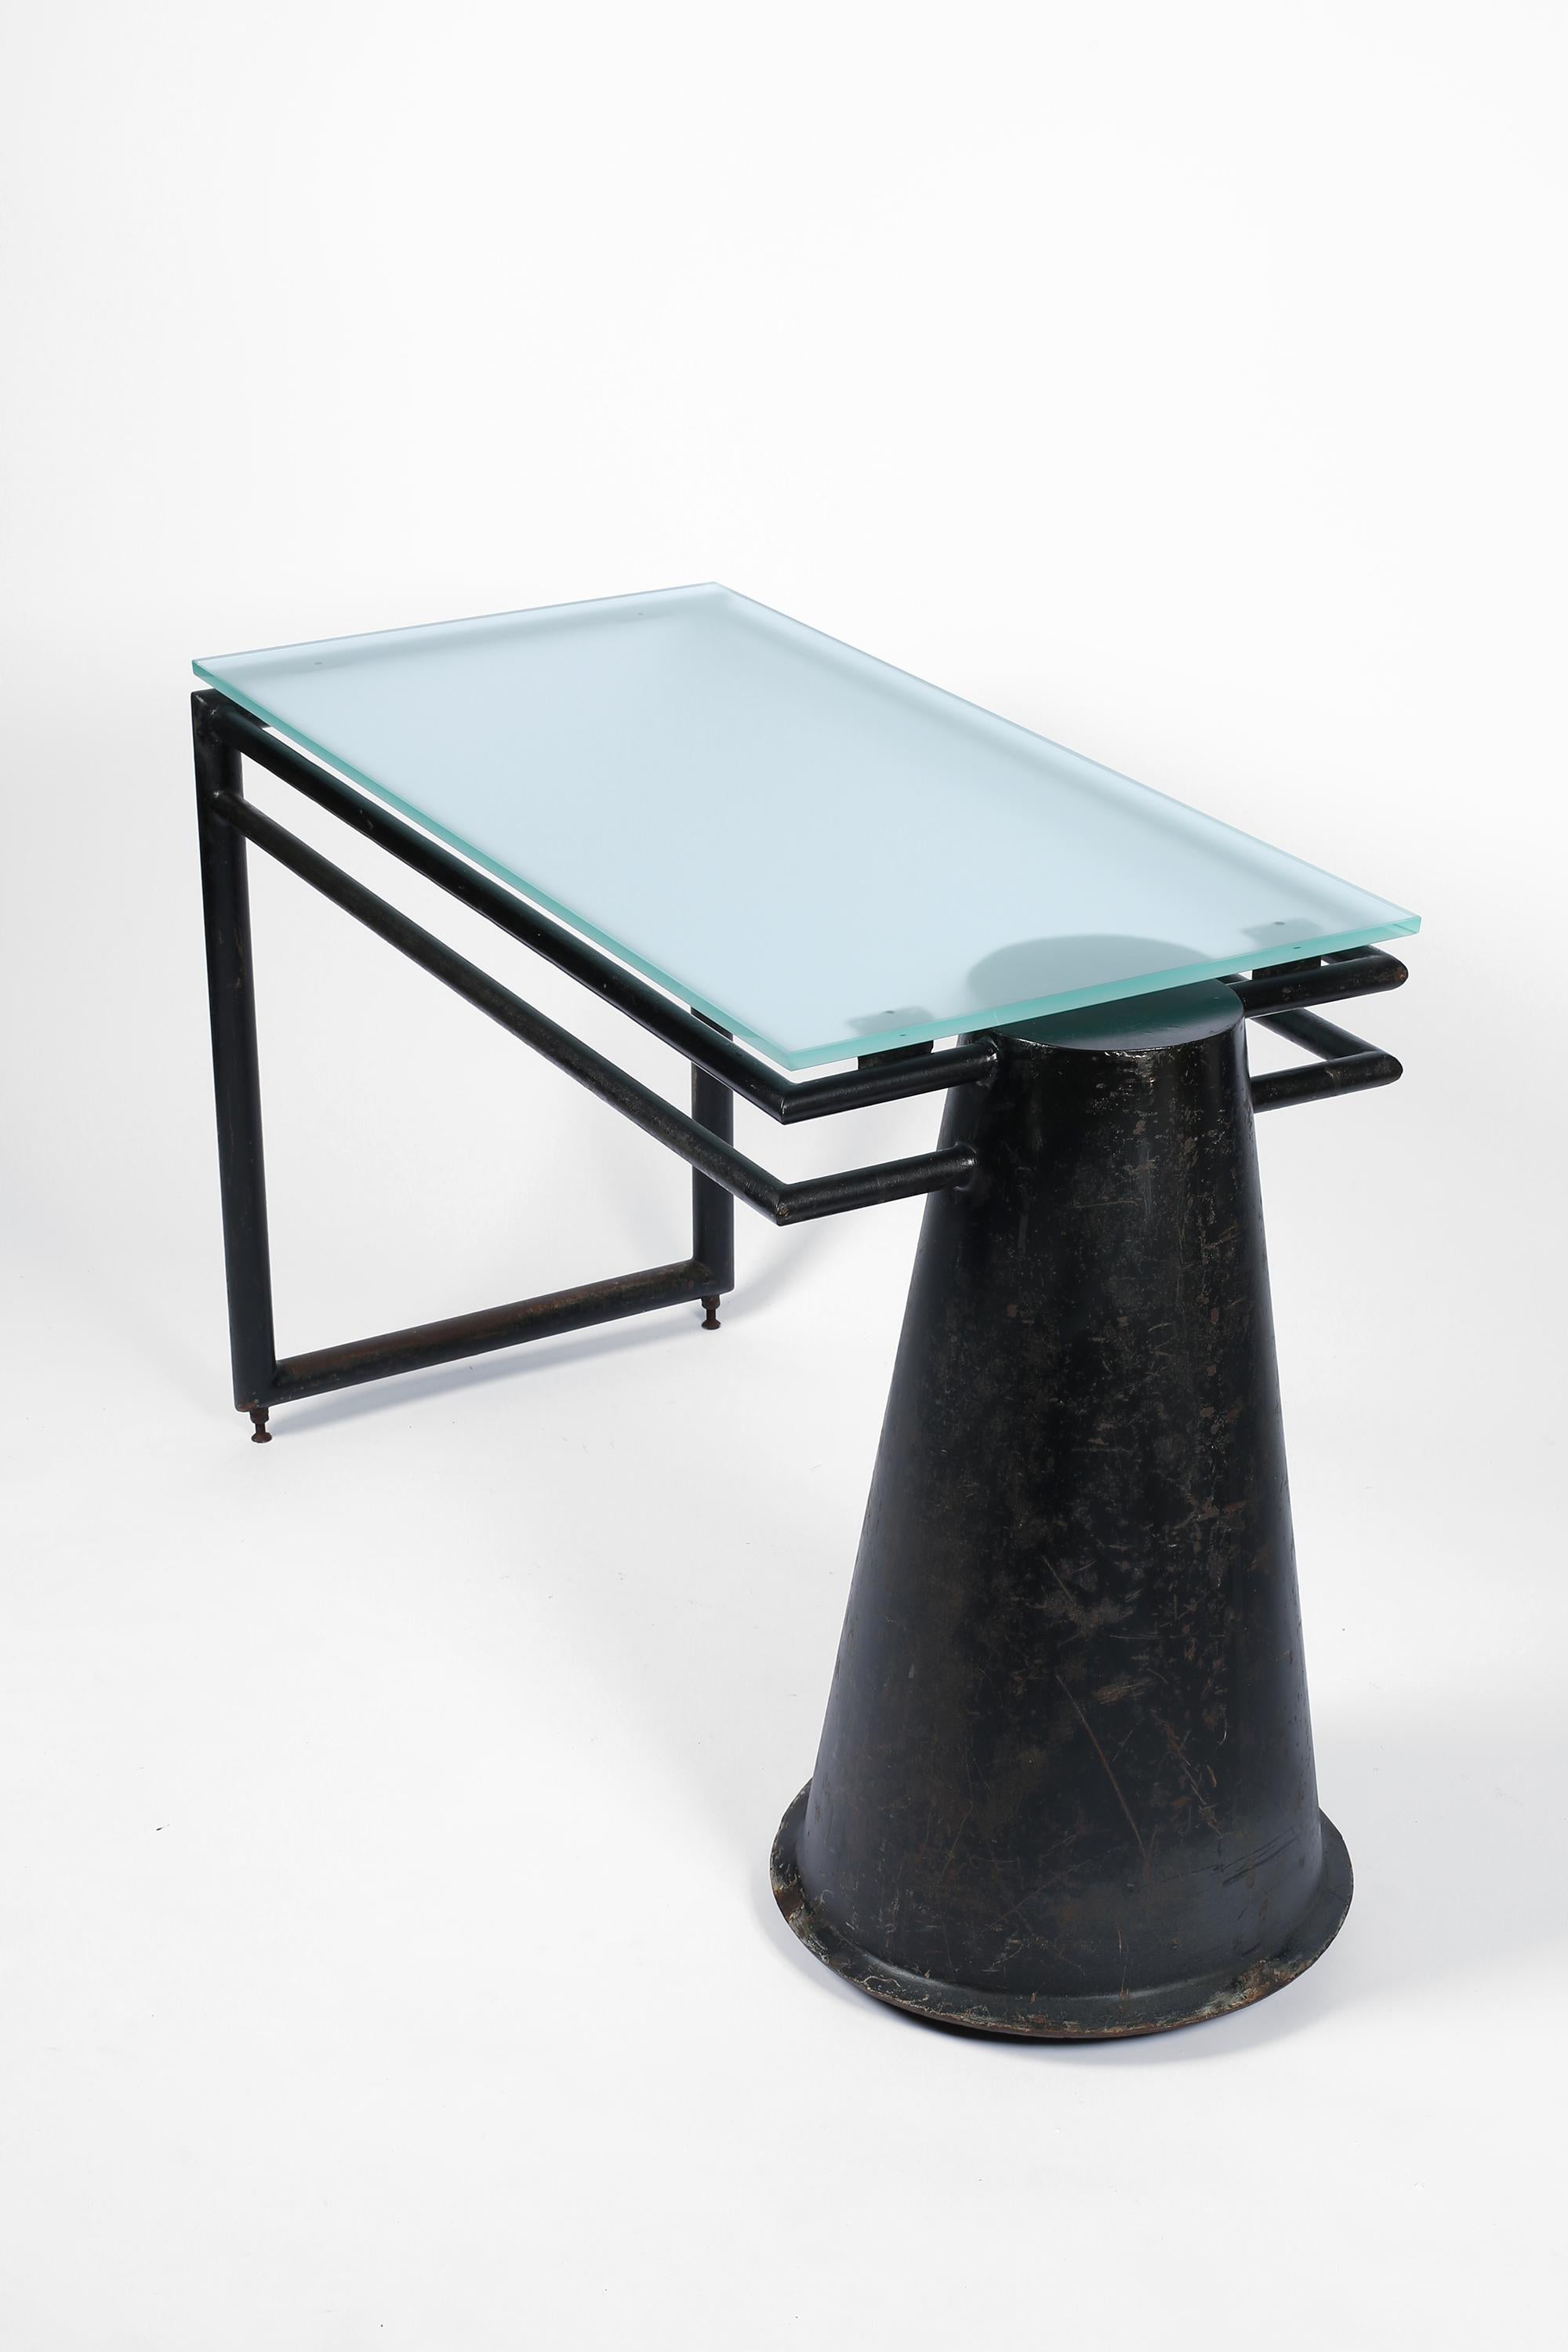 Ein skulpturaler Schreibtisch aus patiniertem, schwarz emailliertem Stahl mit einer neuen, schwebenden Platte aus Milchglas. Seine Form A erinnert an Le Corbusier - eine Anspielung auf den Modernismus und den Industrialismus. Französisch,